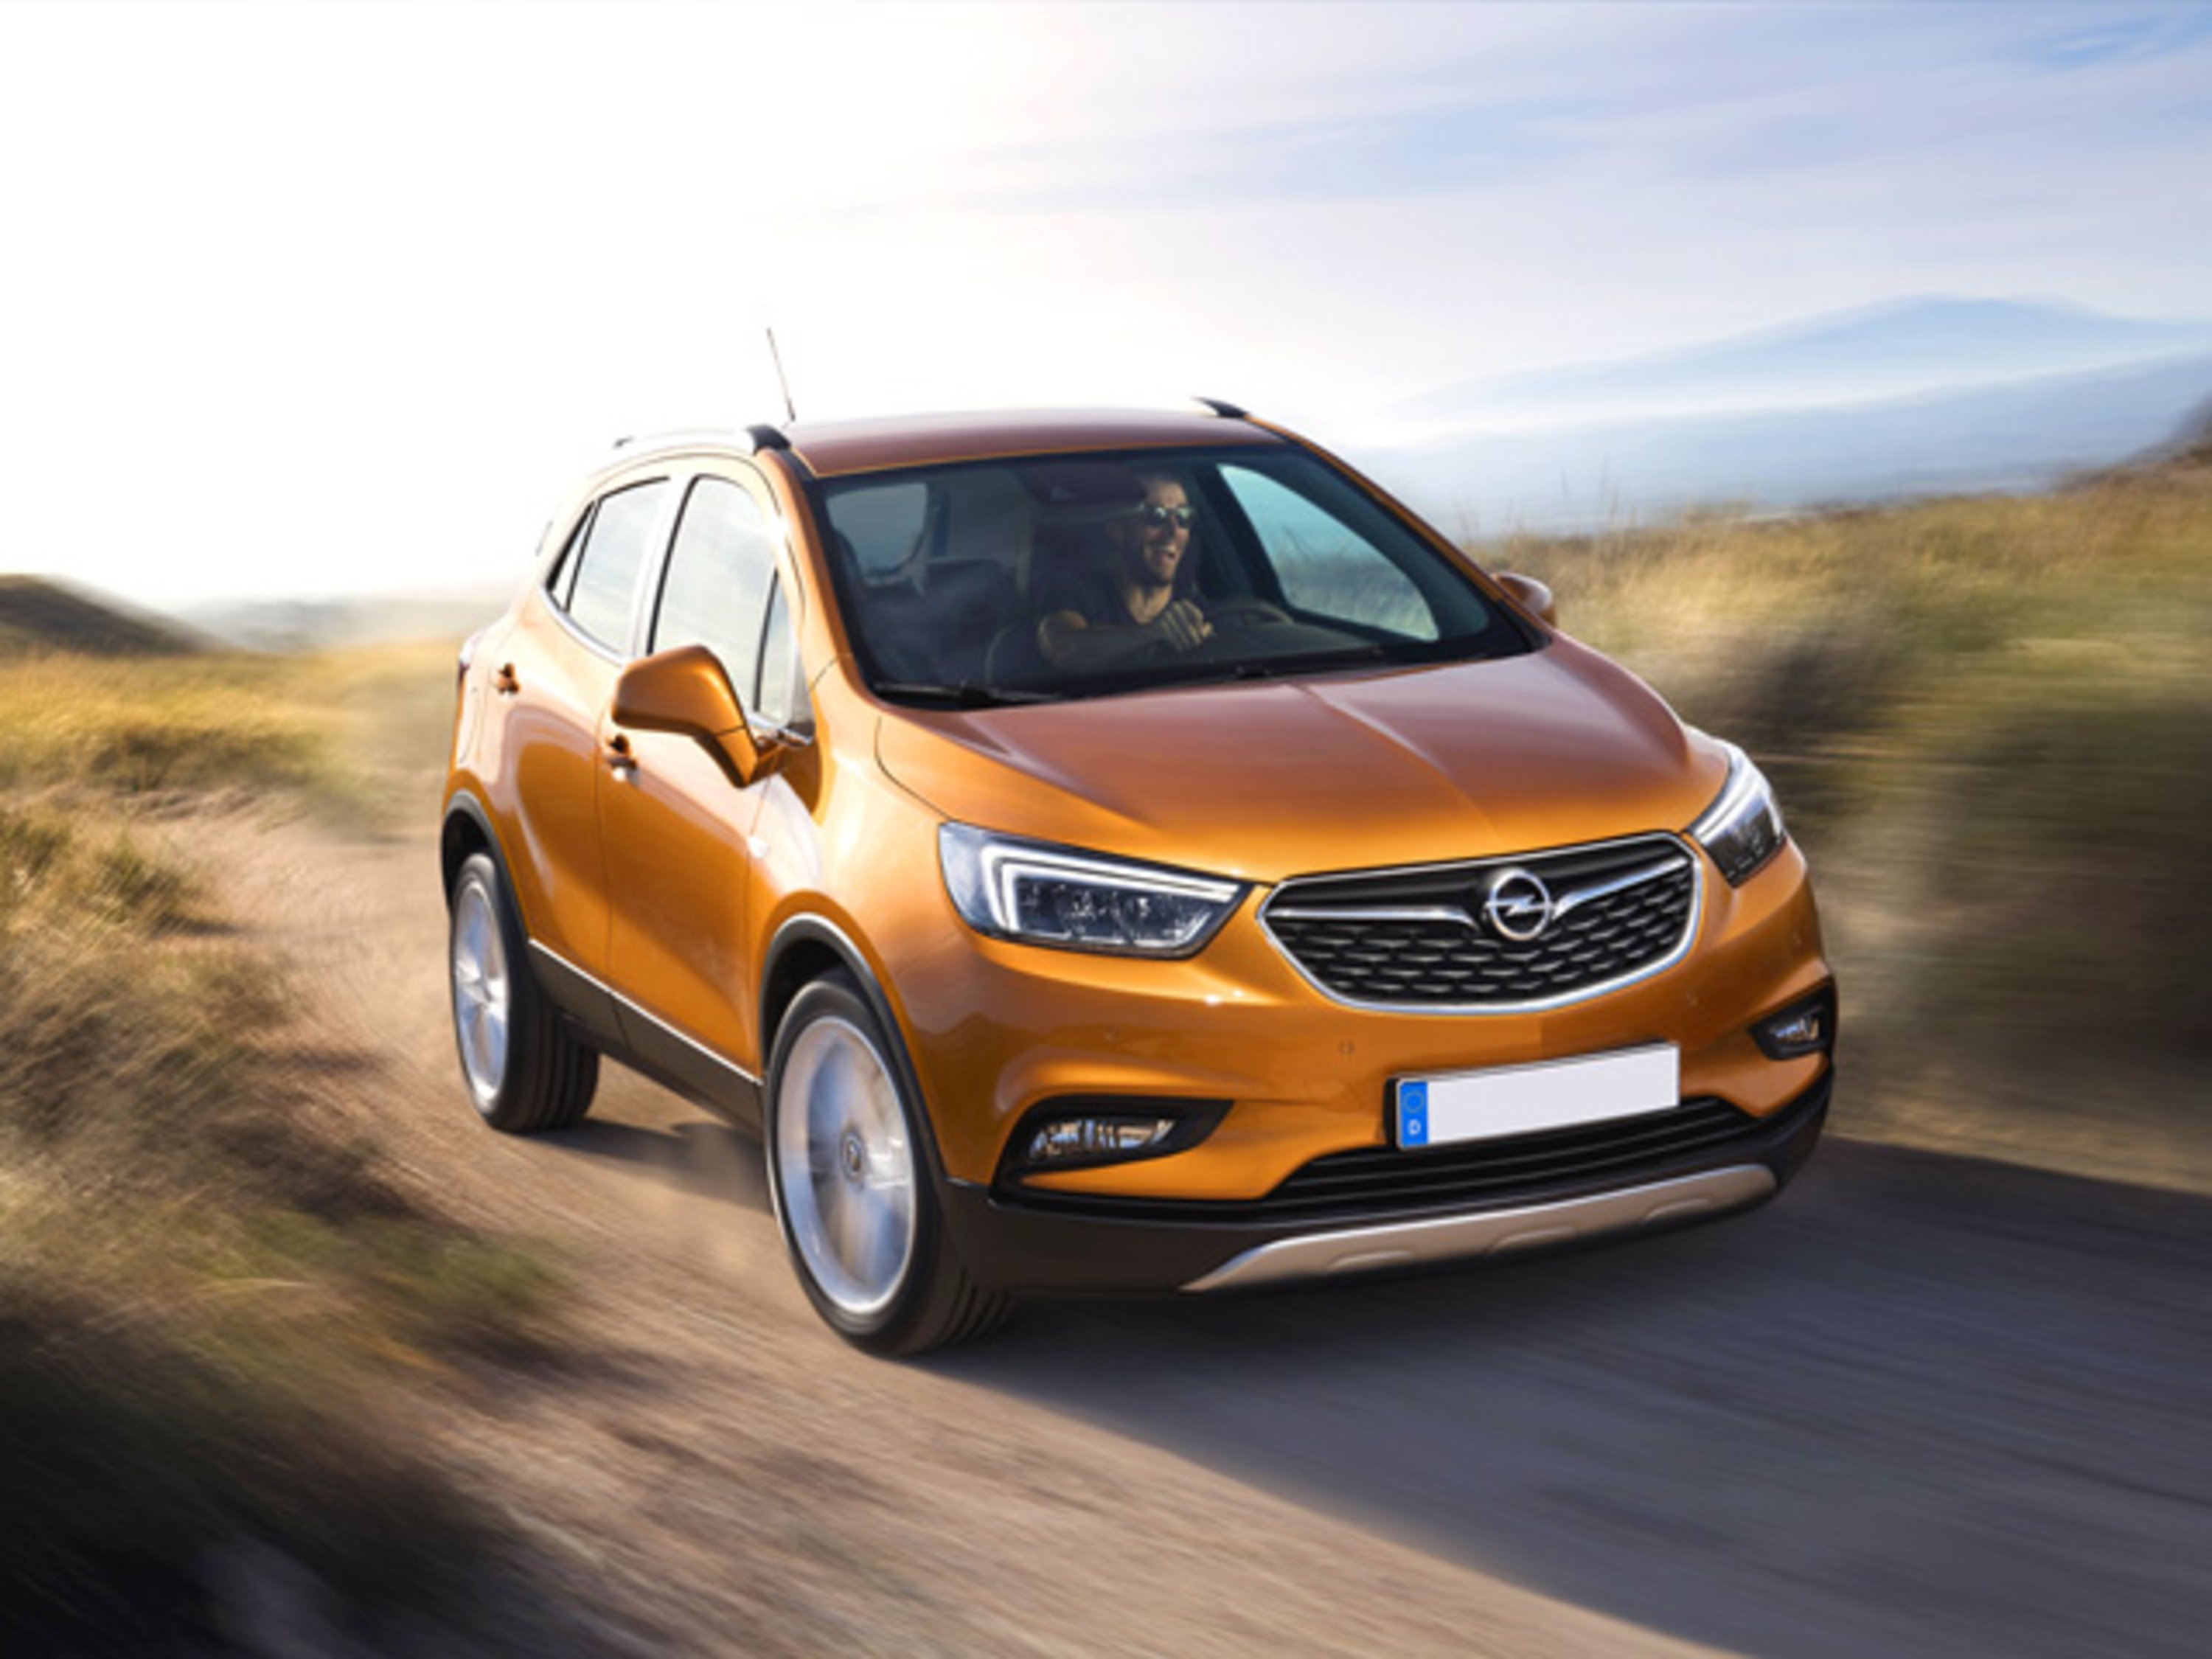 Opel Mokka 1.6 Ecotec 115CV 4x2 Start&Stop 